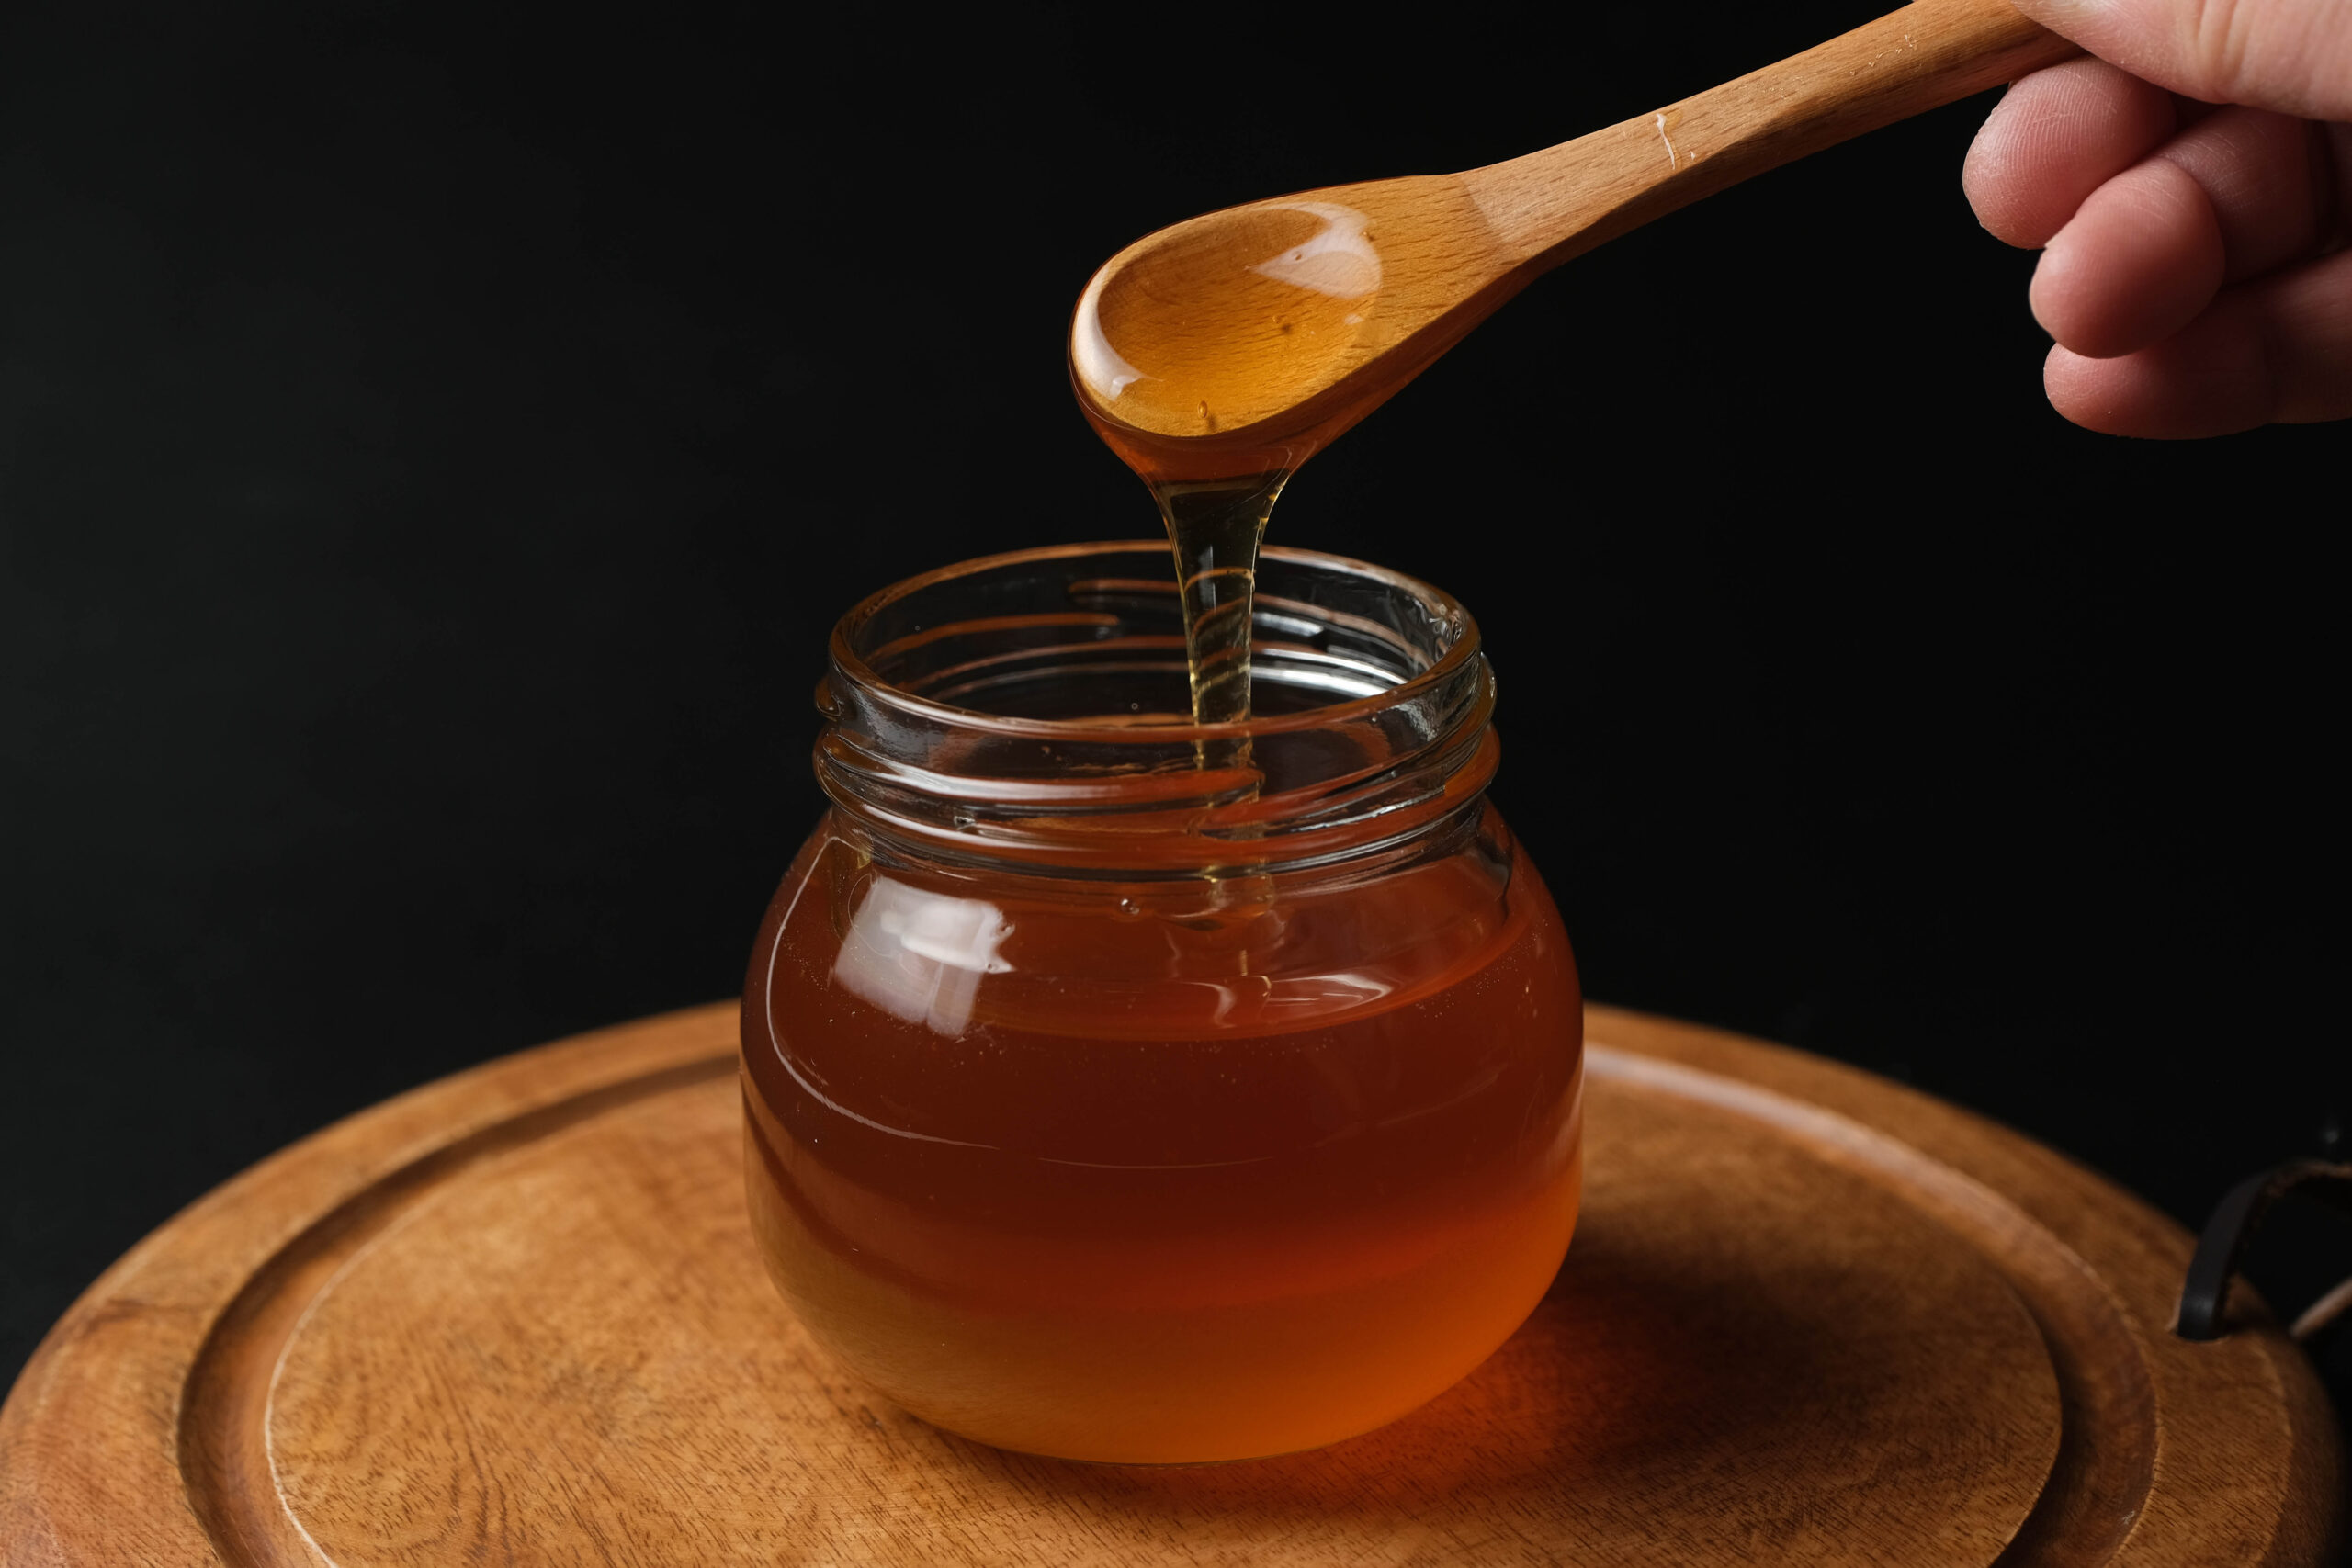 日本一流的原生蜂蜜，保留了蜜蜂的生命，在你把它放进嘴里的那一刻，它的优雅丰富和温和的味道给人留下深刻印象。